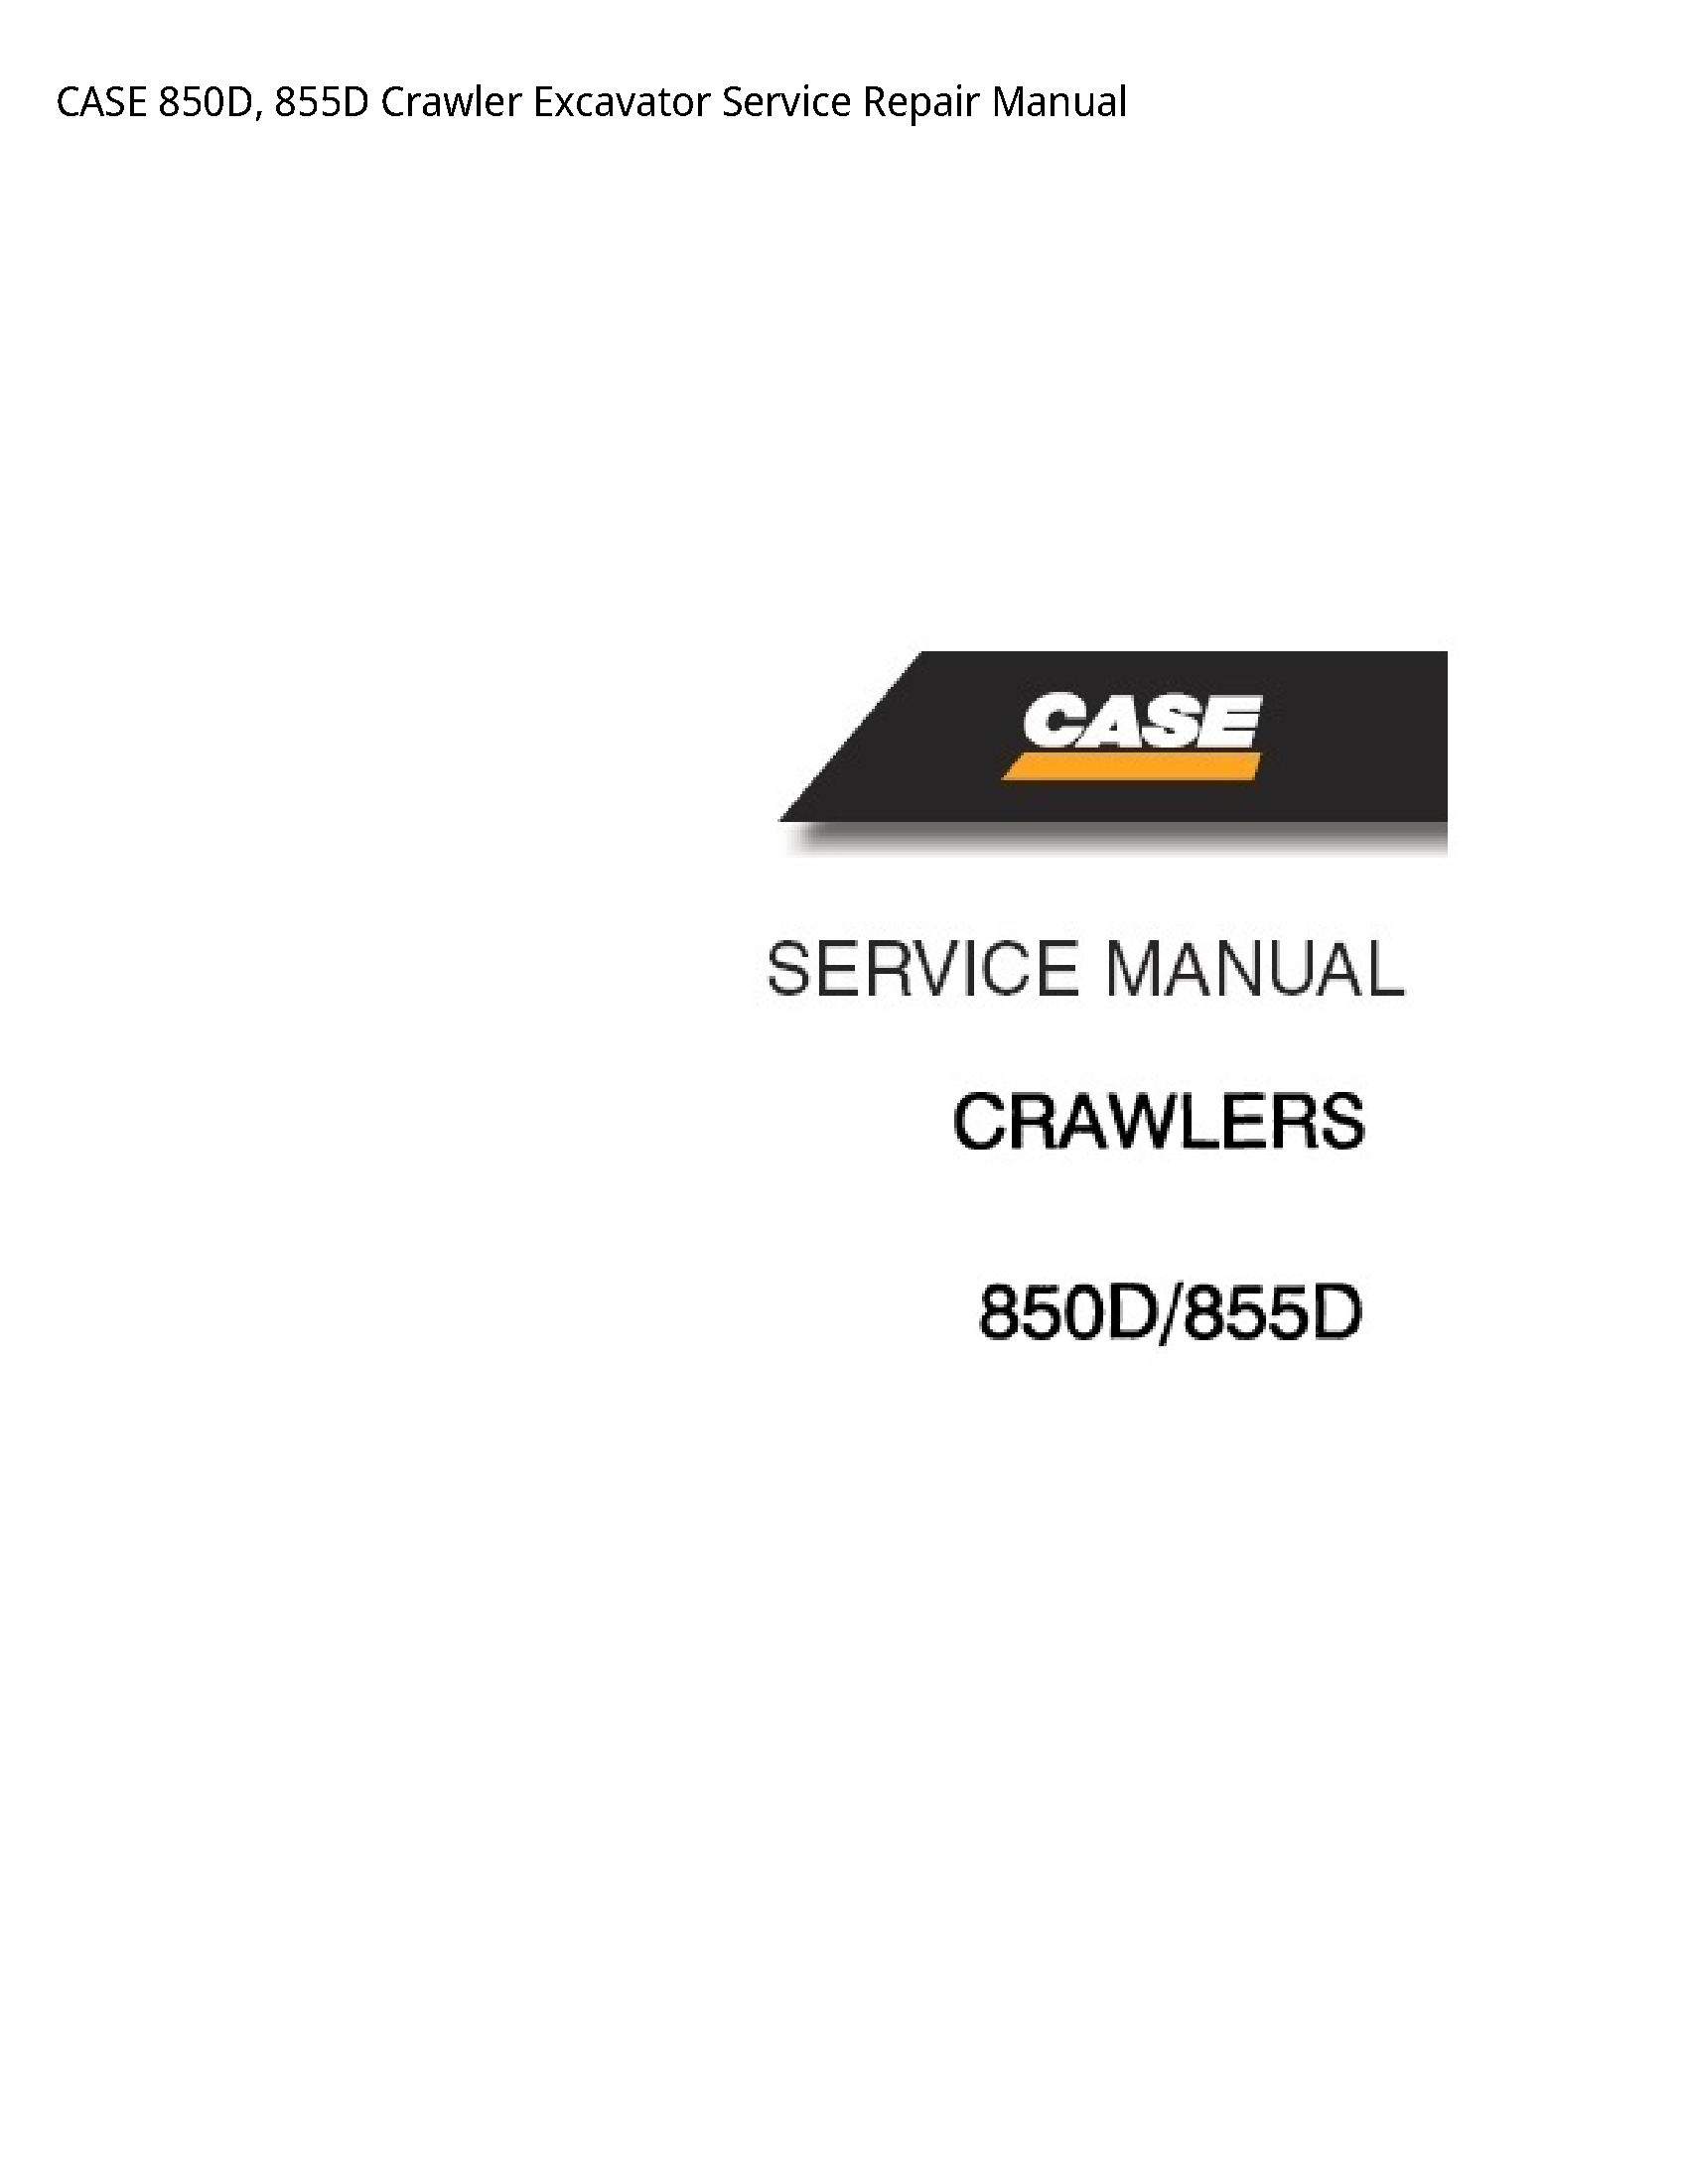 Case/Case IH 850D Crawler Excavator manual